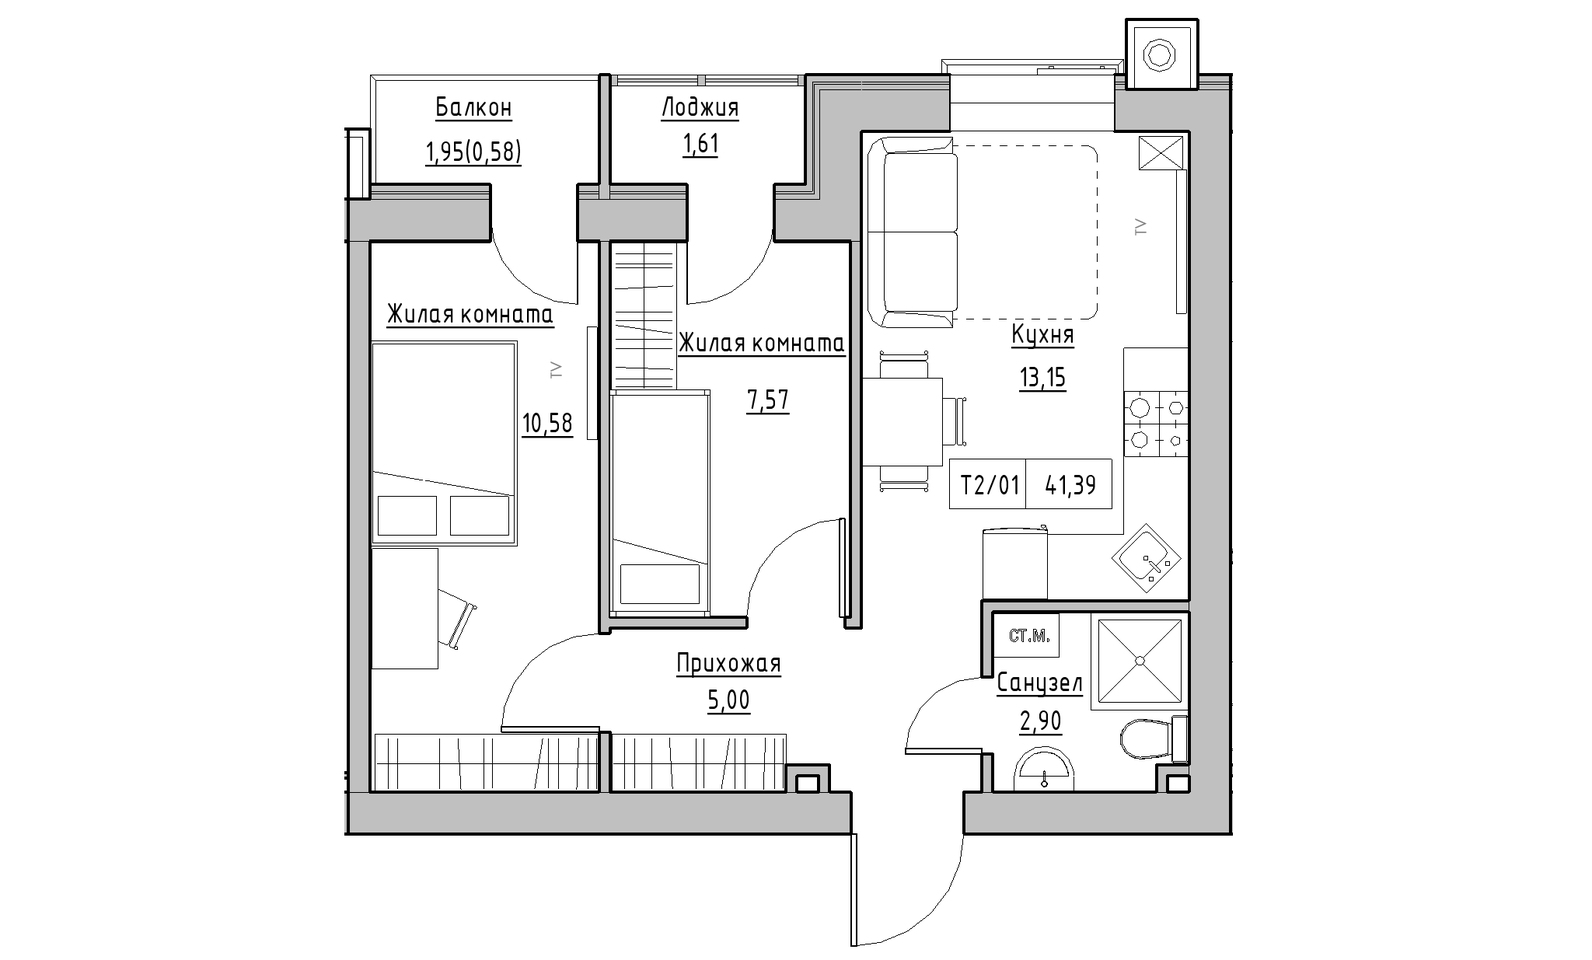 Планировка 2-к квартира площей 41.39м2, KS-014-02/0005.